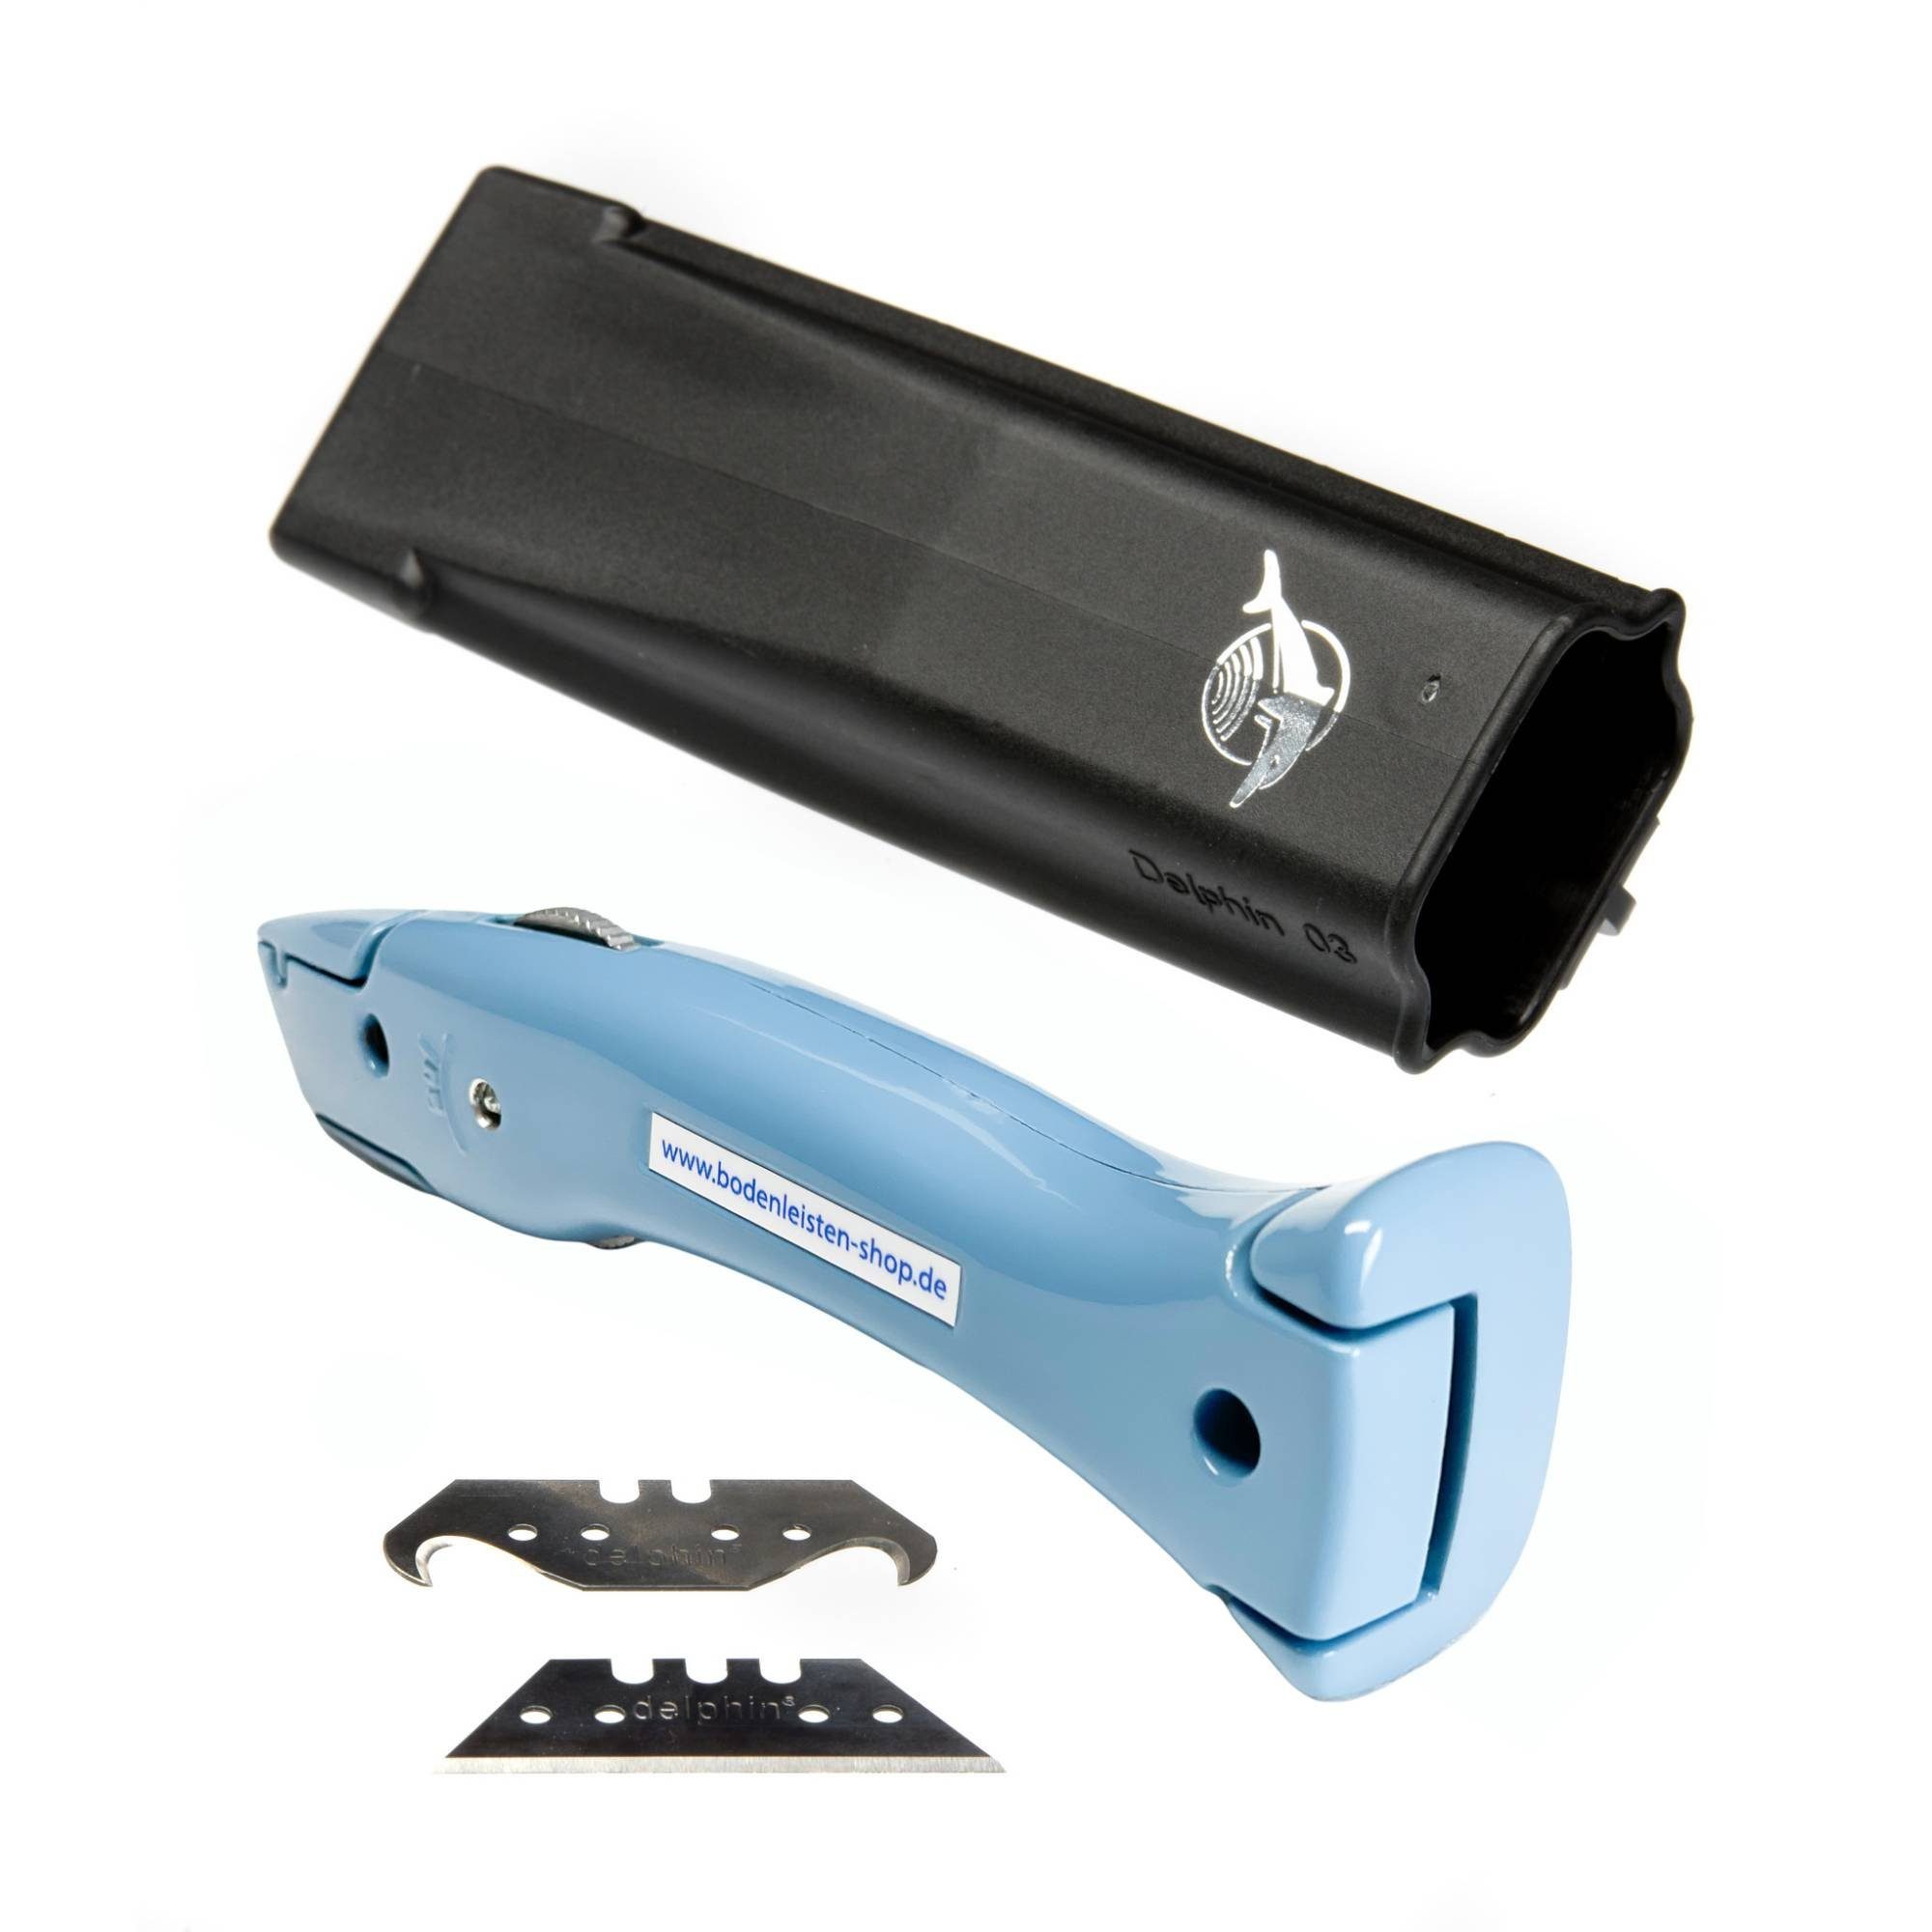 Delphin Cuttermesser Cutter Style-Edition Delphin®-03 Pastellblau Universalmesser